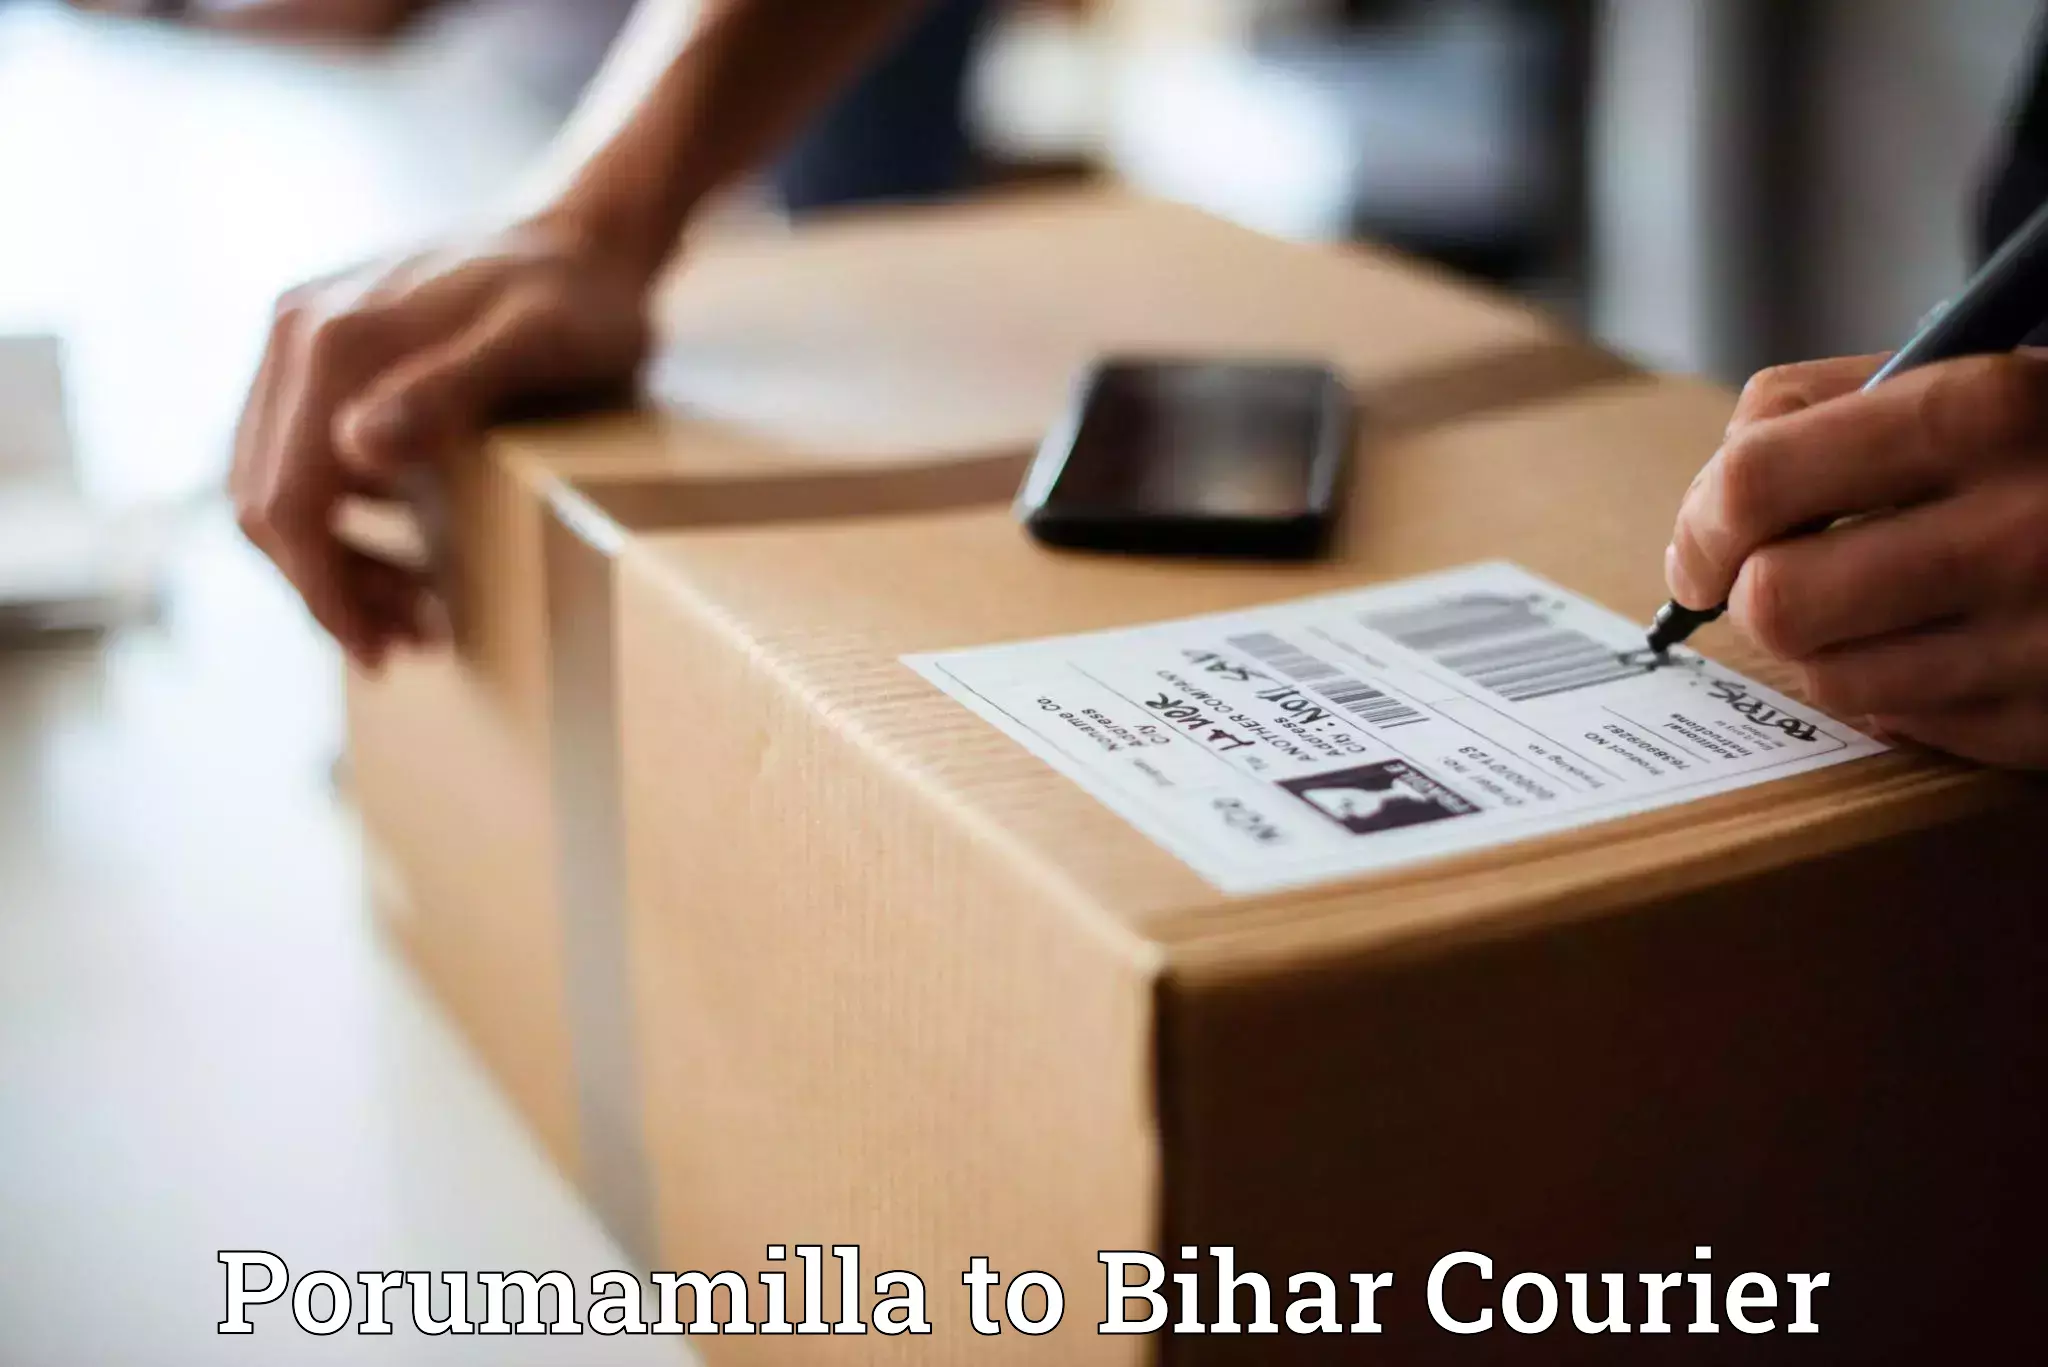 Optimized shipping services Porumamilla to Bihar